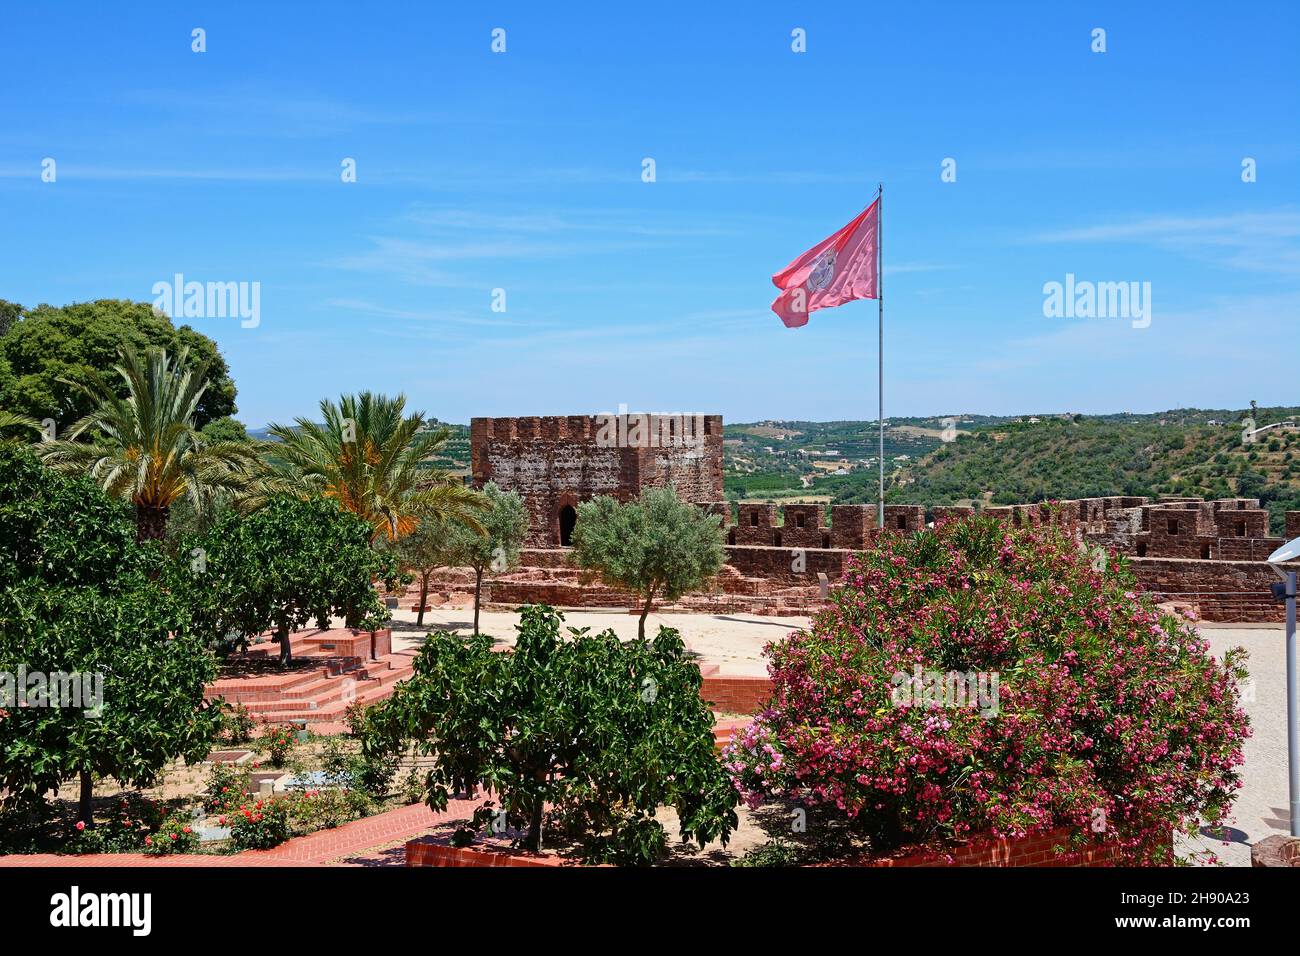 Merli medievali e torri all'interno del castello con vista sulla campagna, Silves, Portogallo, Europa. Foto Stock